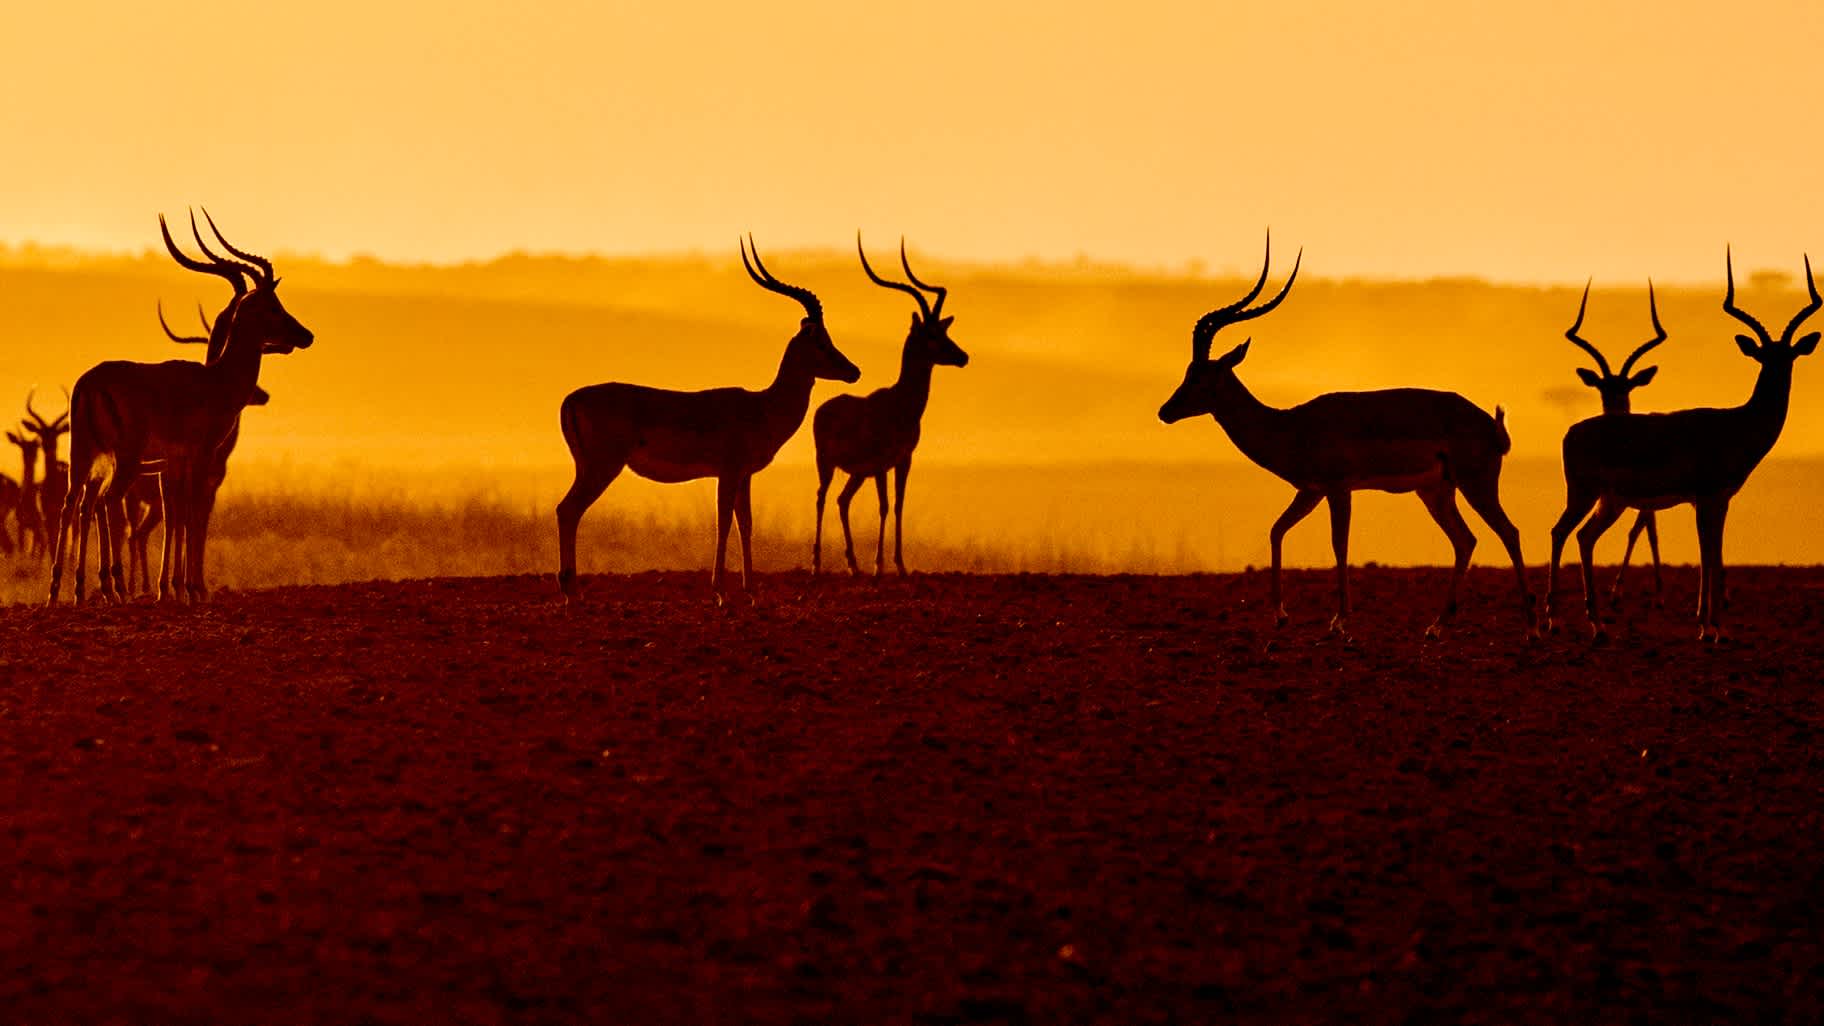 Impalas at sunnset in Kenya's Masai Mara